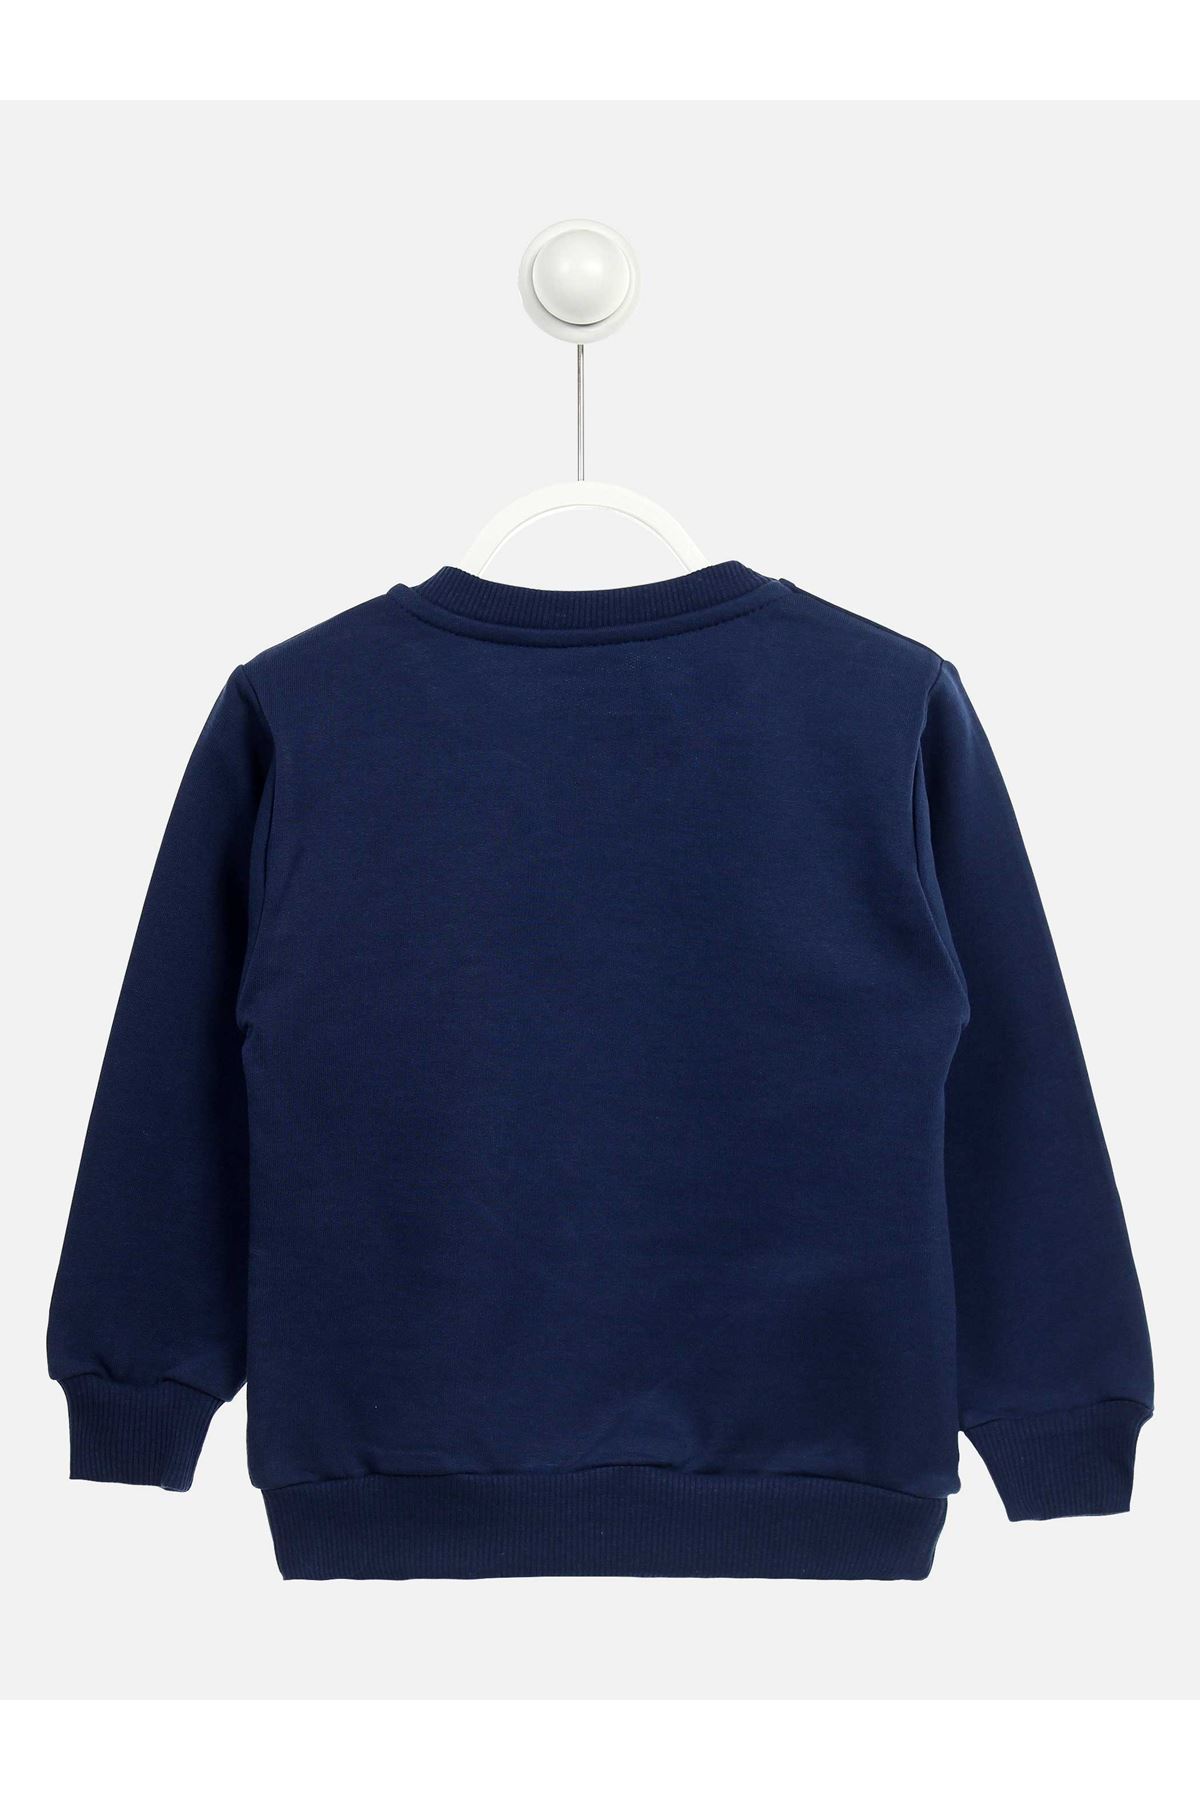 Indigo Seasonal Male Child Sweatshirt